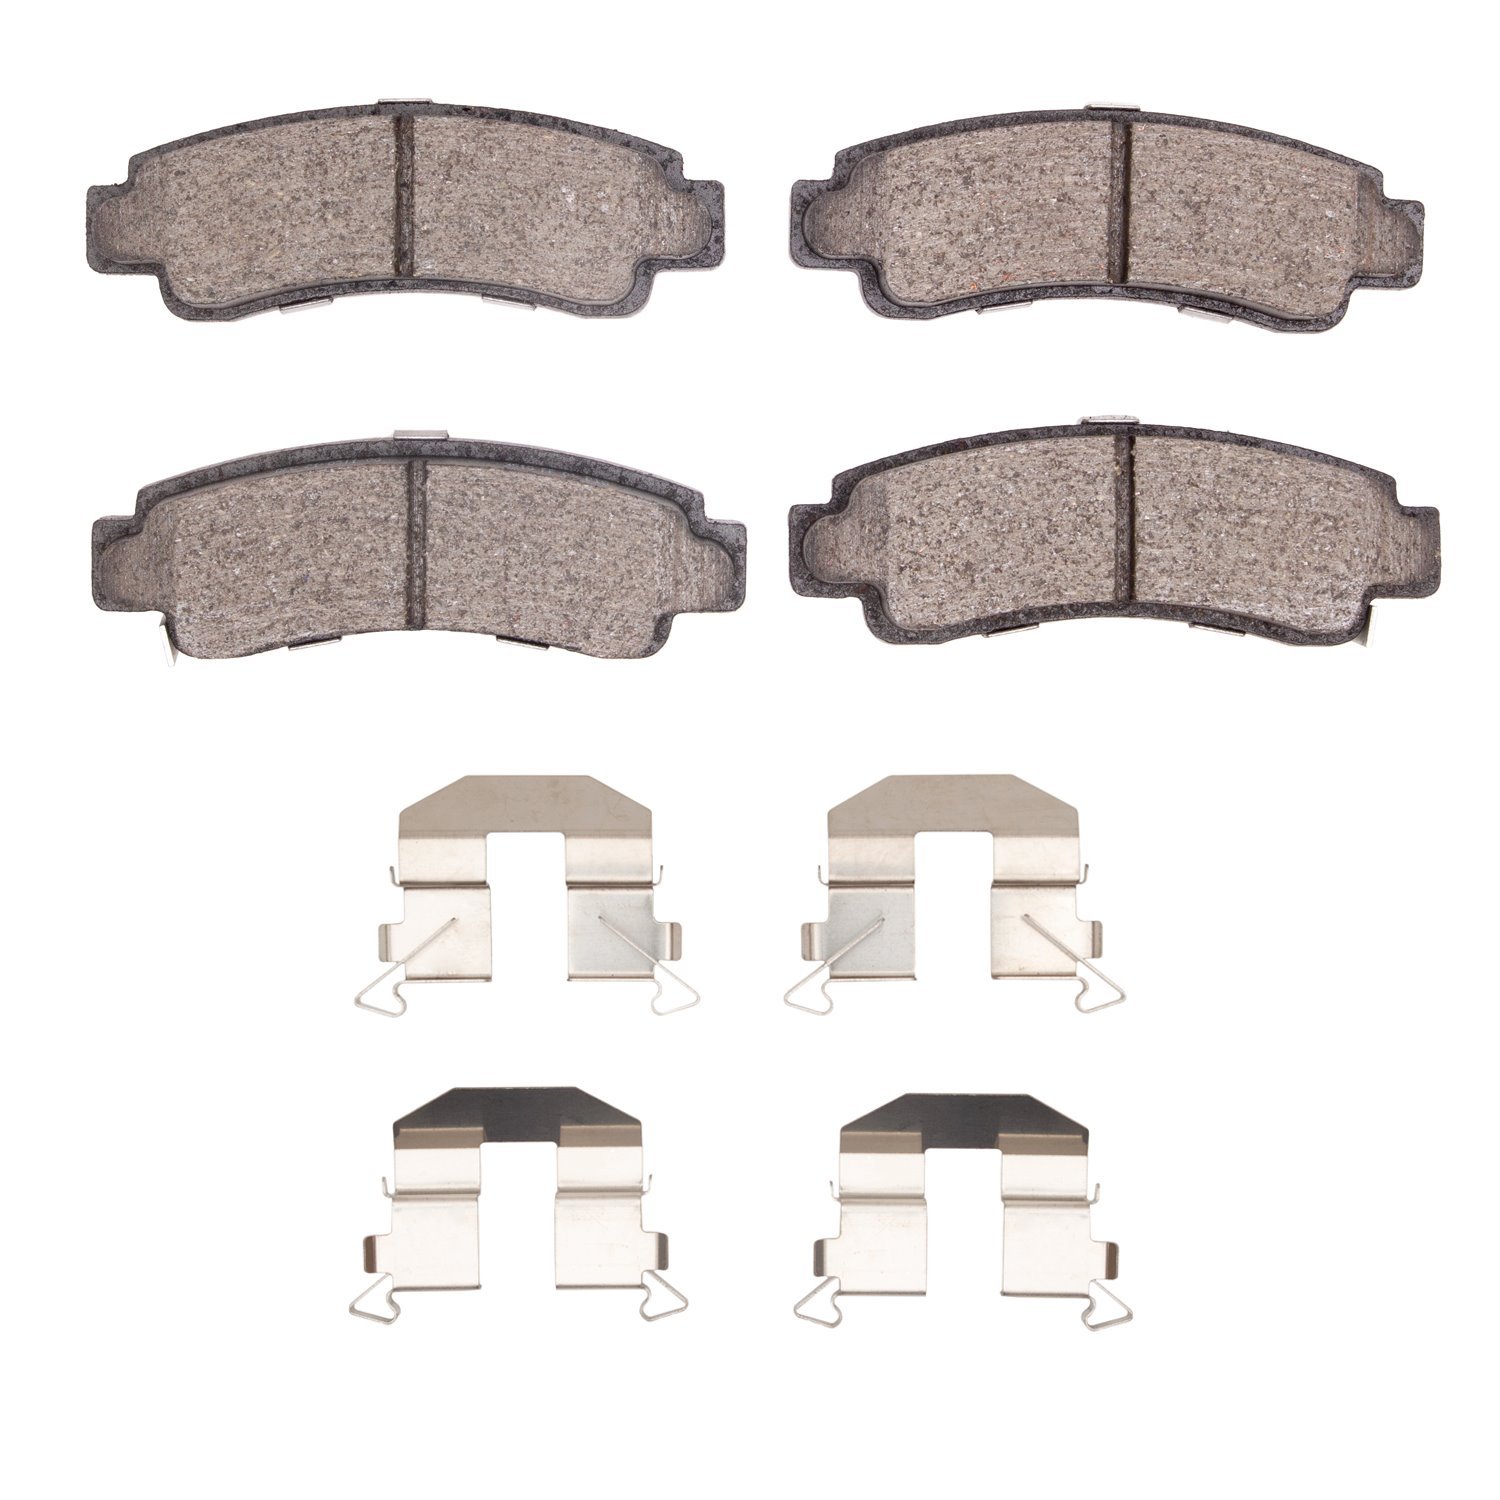 1310-0511-01 3000-Series Ceramic Brake Pads & Hardware Kit, 1991-2006 Infiniti/Nissan, Position: Rear